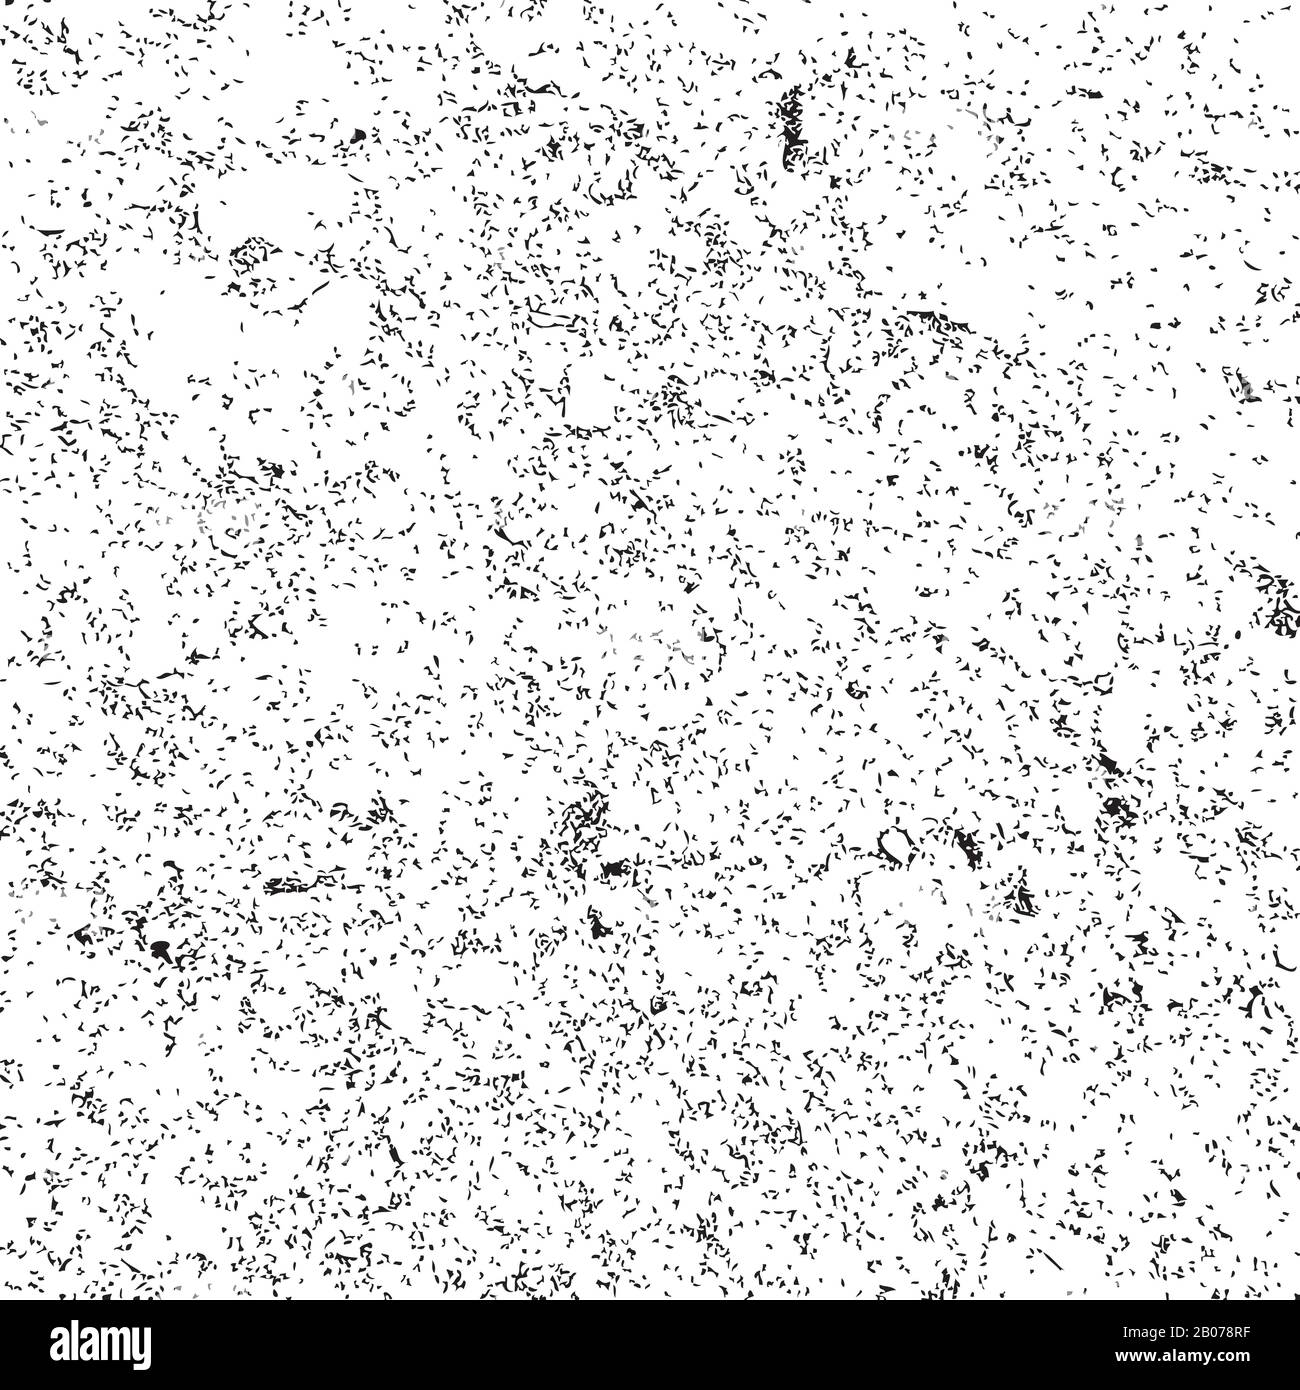 Grunge encre sale noire à grain fin texture vectorielle. Effet de l'illustration de particules sales et désordonnées et abstraites Illustration de Vecteur